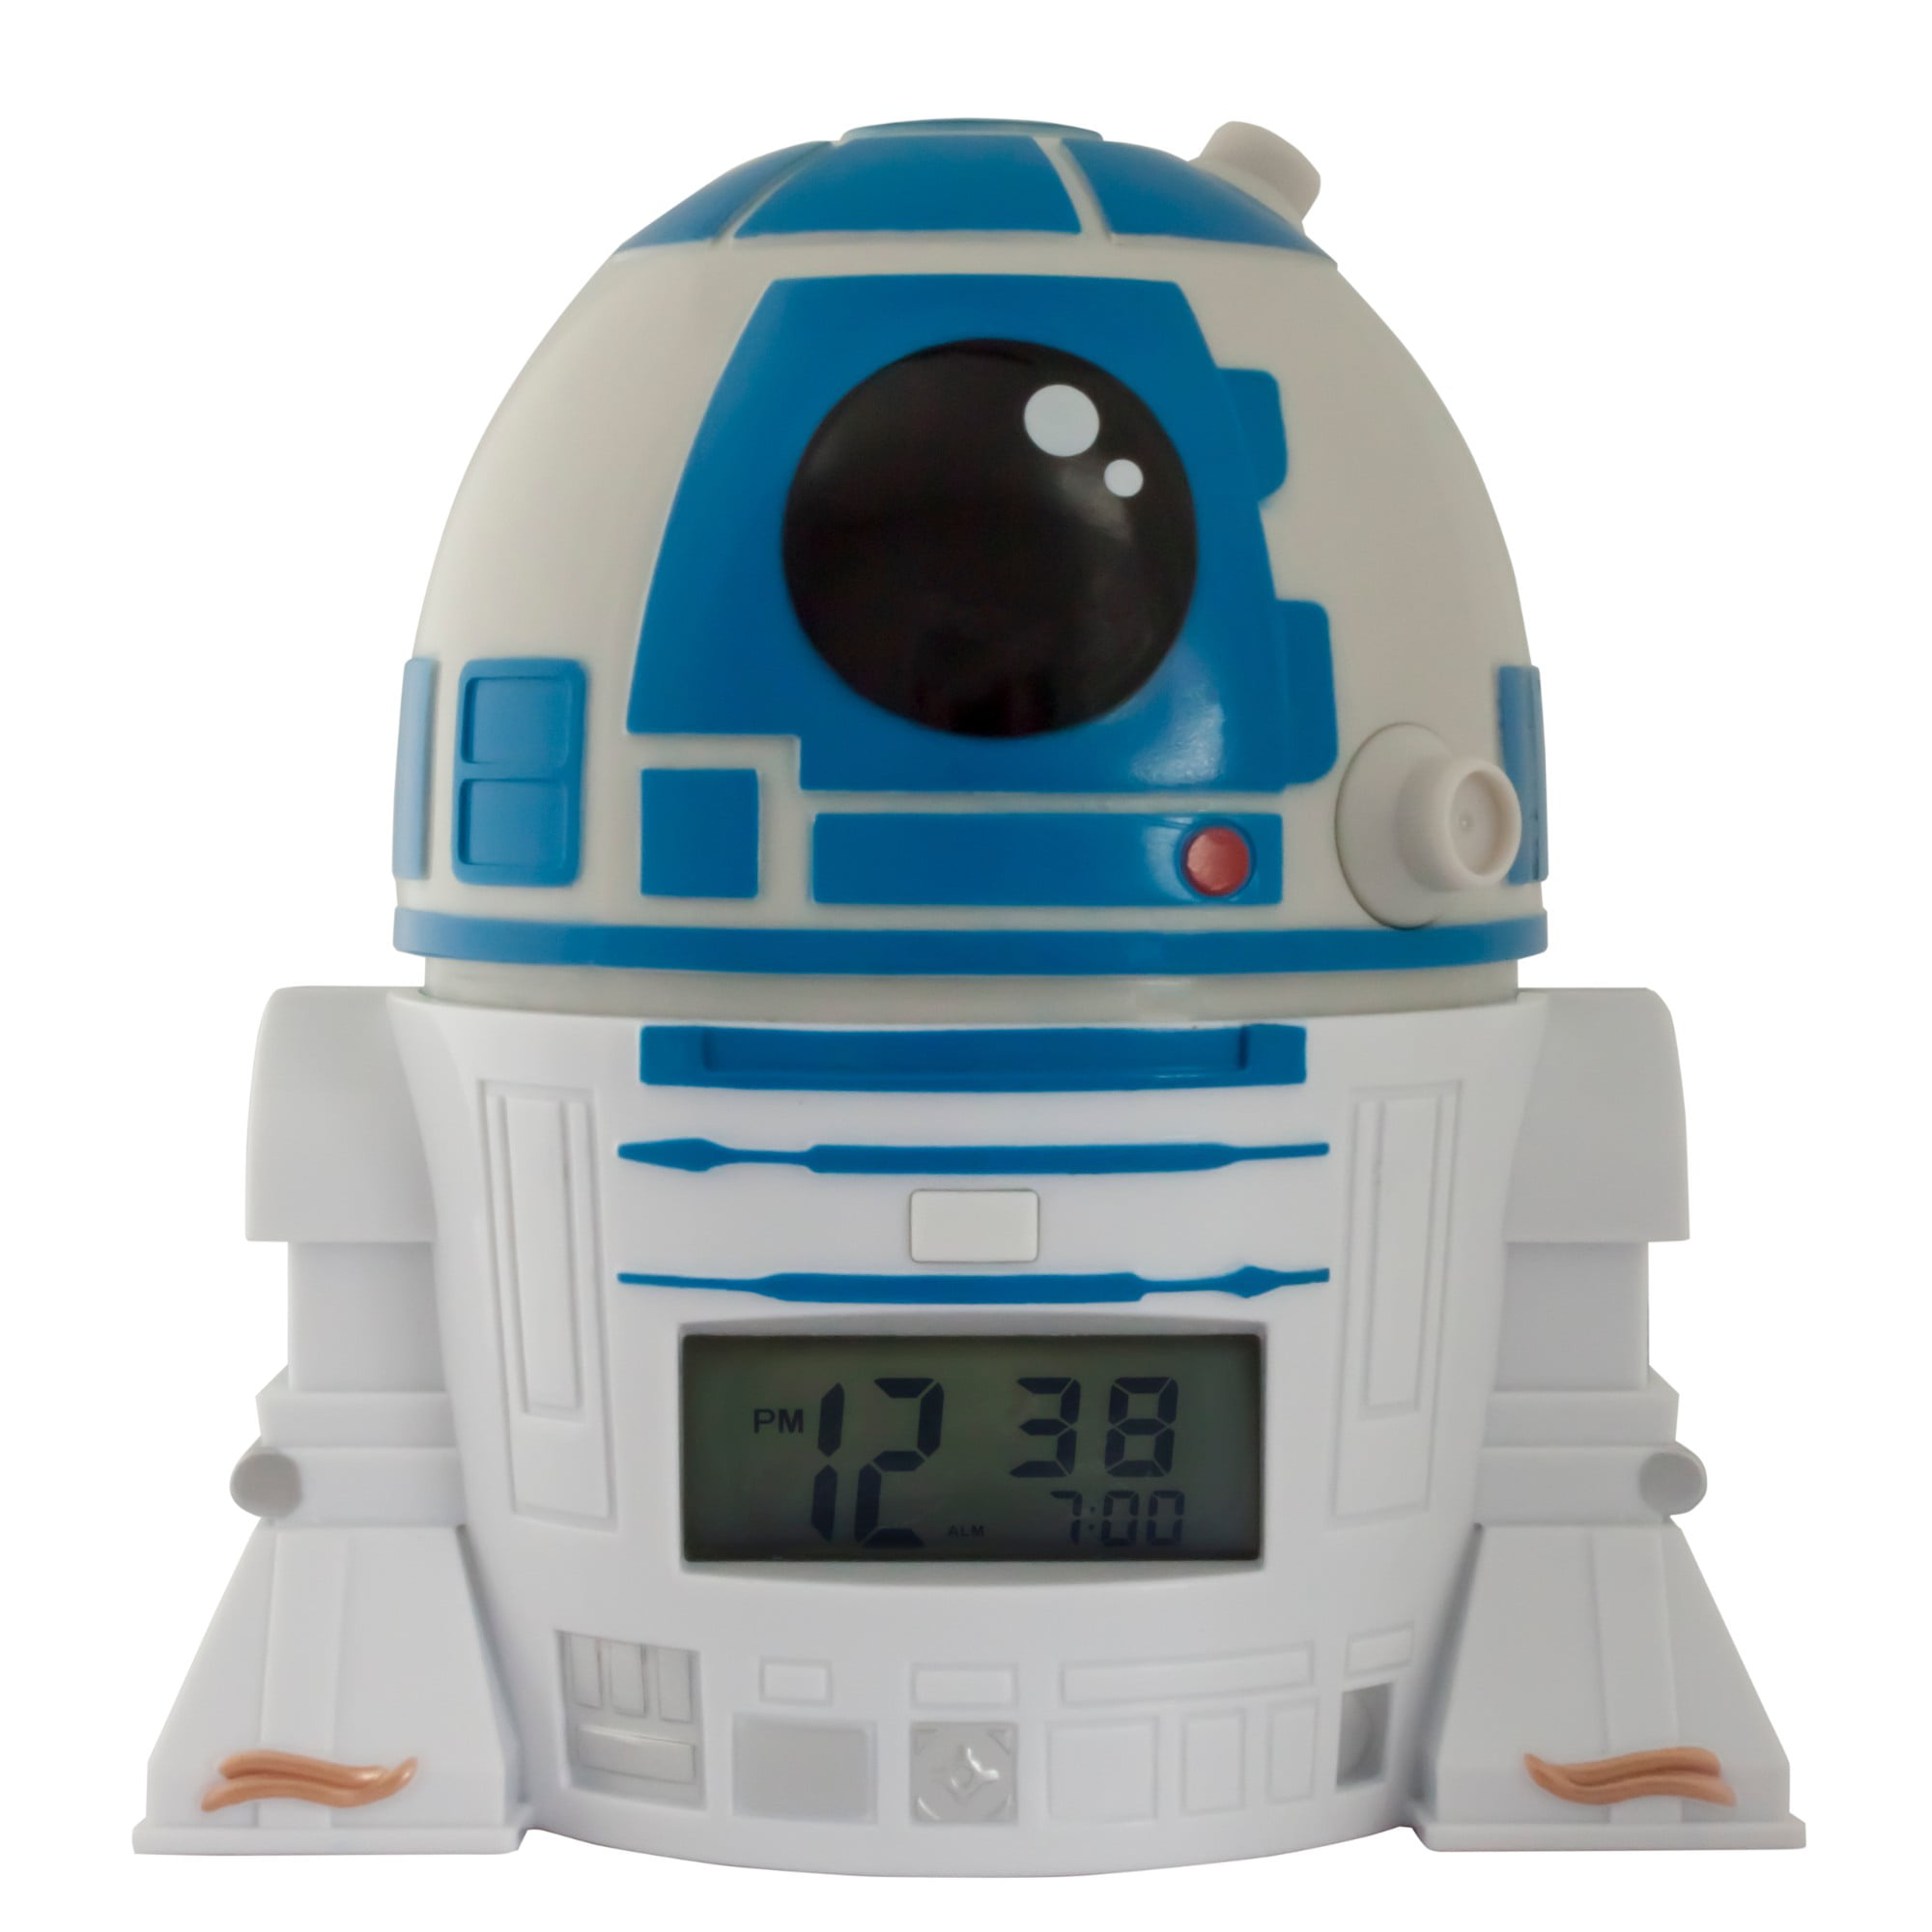 Star Wars R2-D2 R2D2 Droid Glowlight Glow Night Light USB Charger Nightlight New 